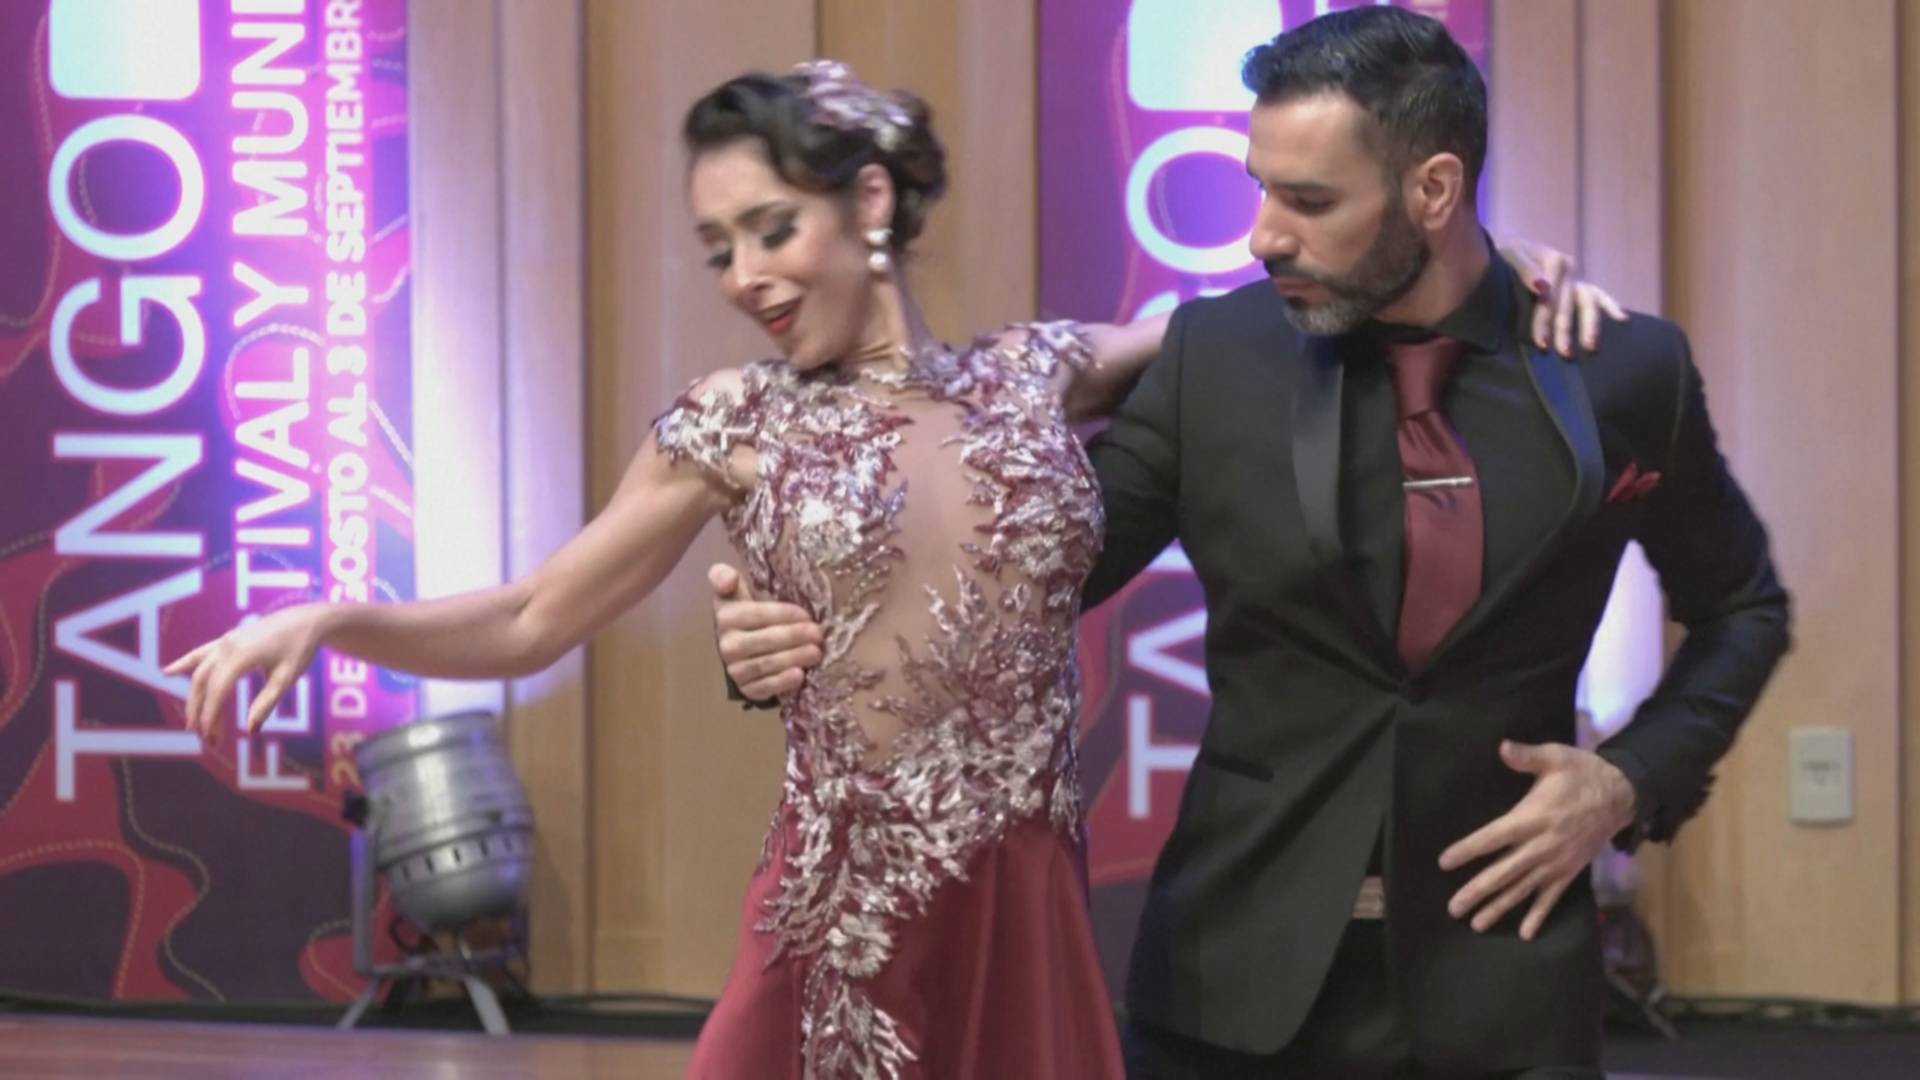 Элегантность и мастерство: чемпионат мира по танго проходит в Буэнос-Айресе